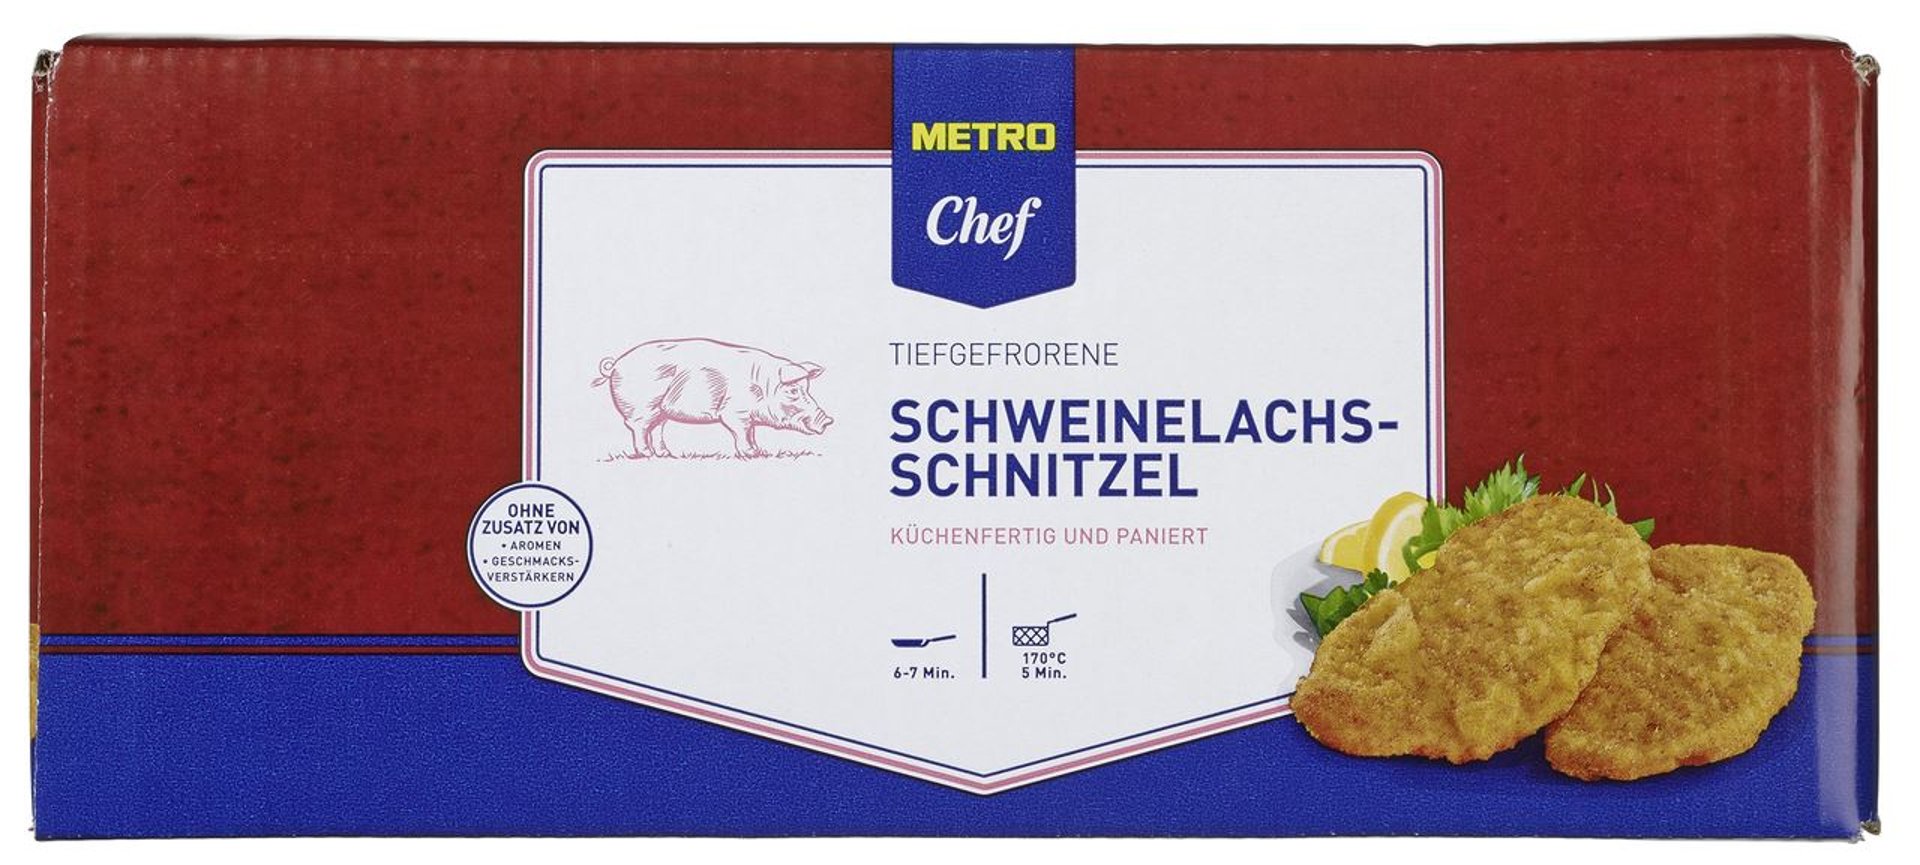 Schweine 40 METRO 8 kg Lachsschnitzel 200 Karton paniert, Chef à g Stück - ca. tiefgefroren, -